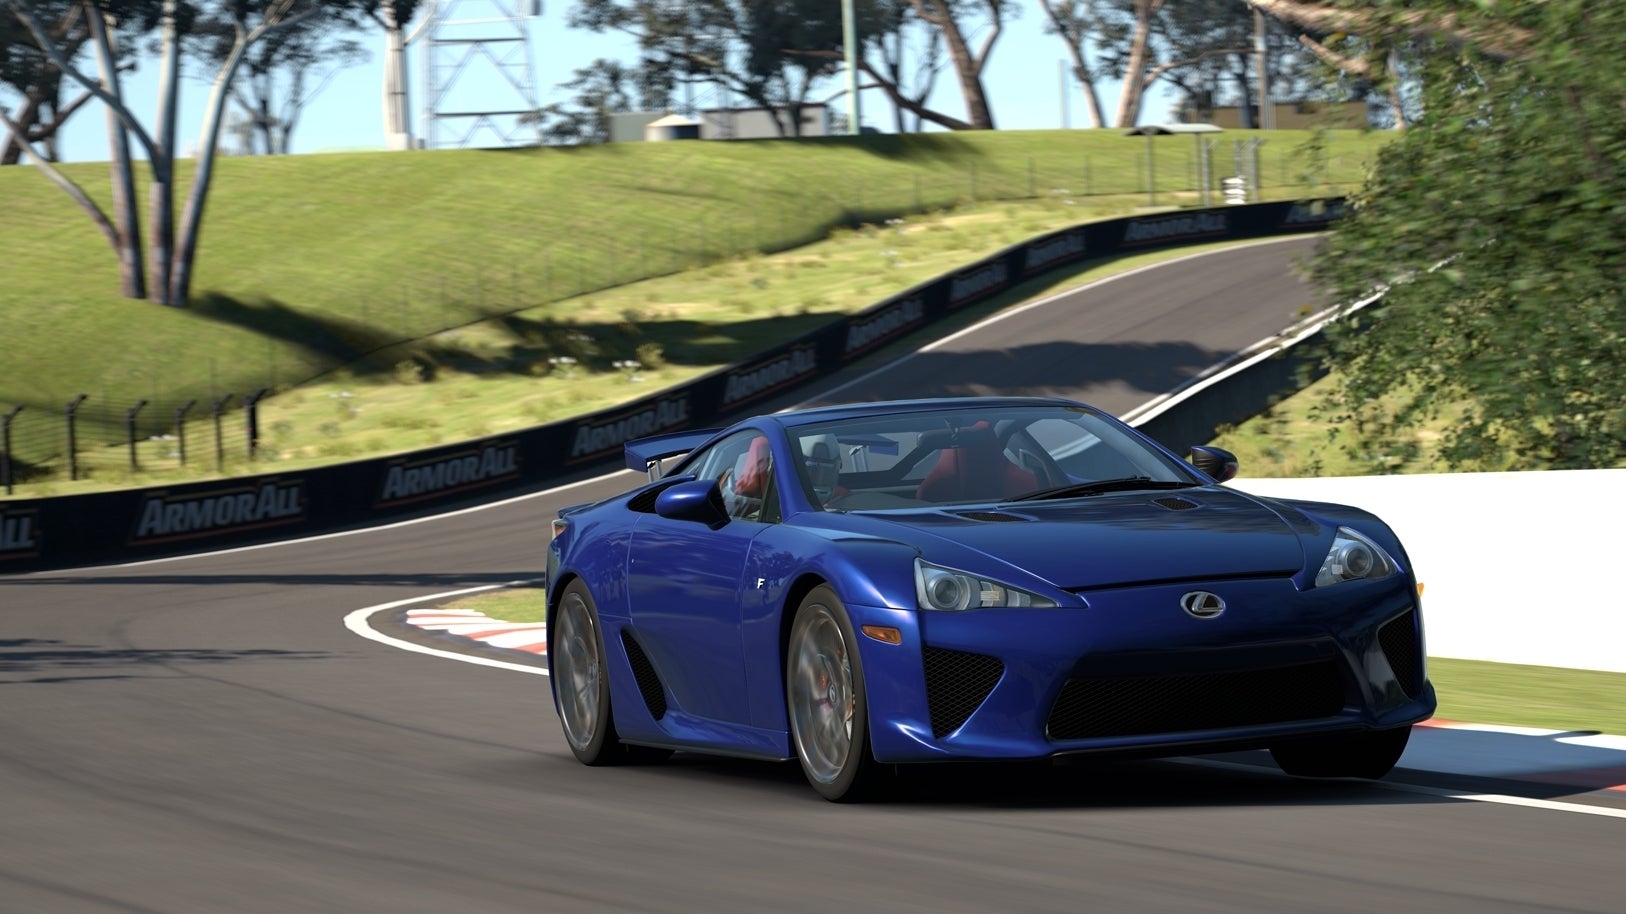 Immagine di Gran Turismo ha dettato gli standard per gli altri simulatori di guida